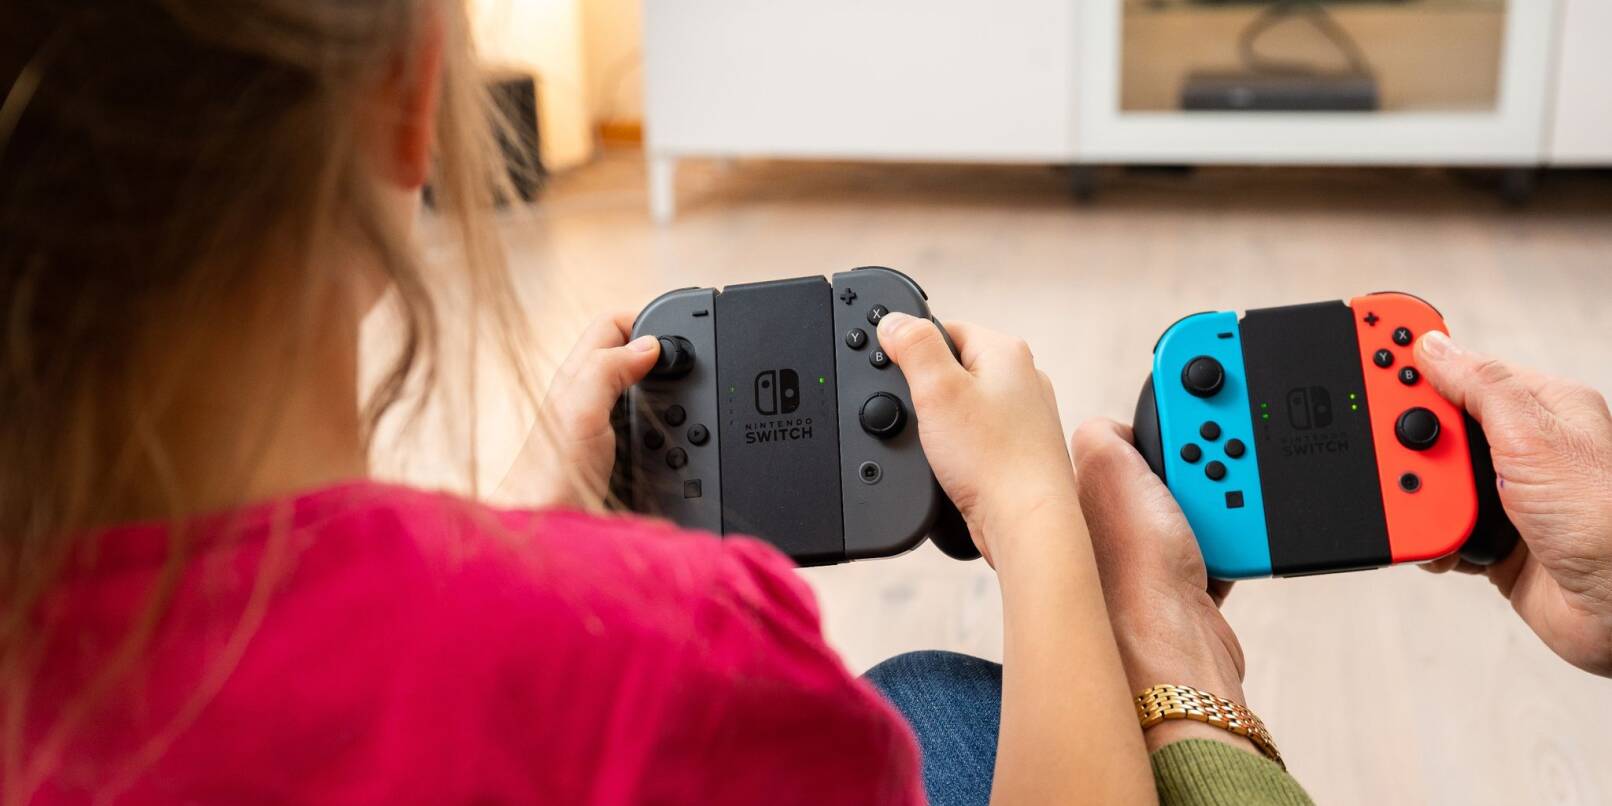 Der europäische Verbraucherverband Beuc hat sich bei der Kommission wegen der defekten Joy-Con-Controller der Spielekonsole Nintendo Switch beschwert.